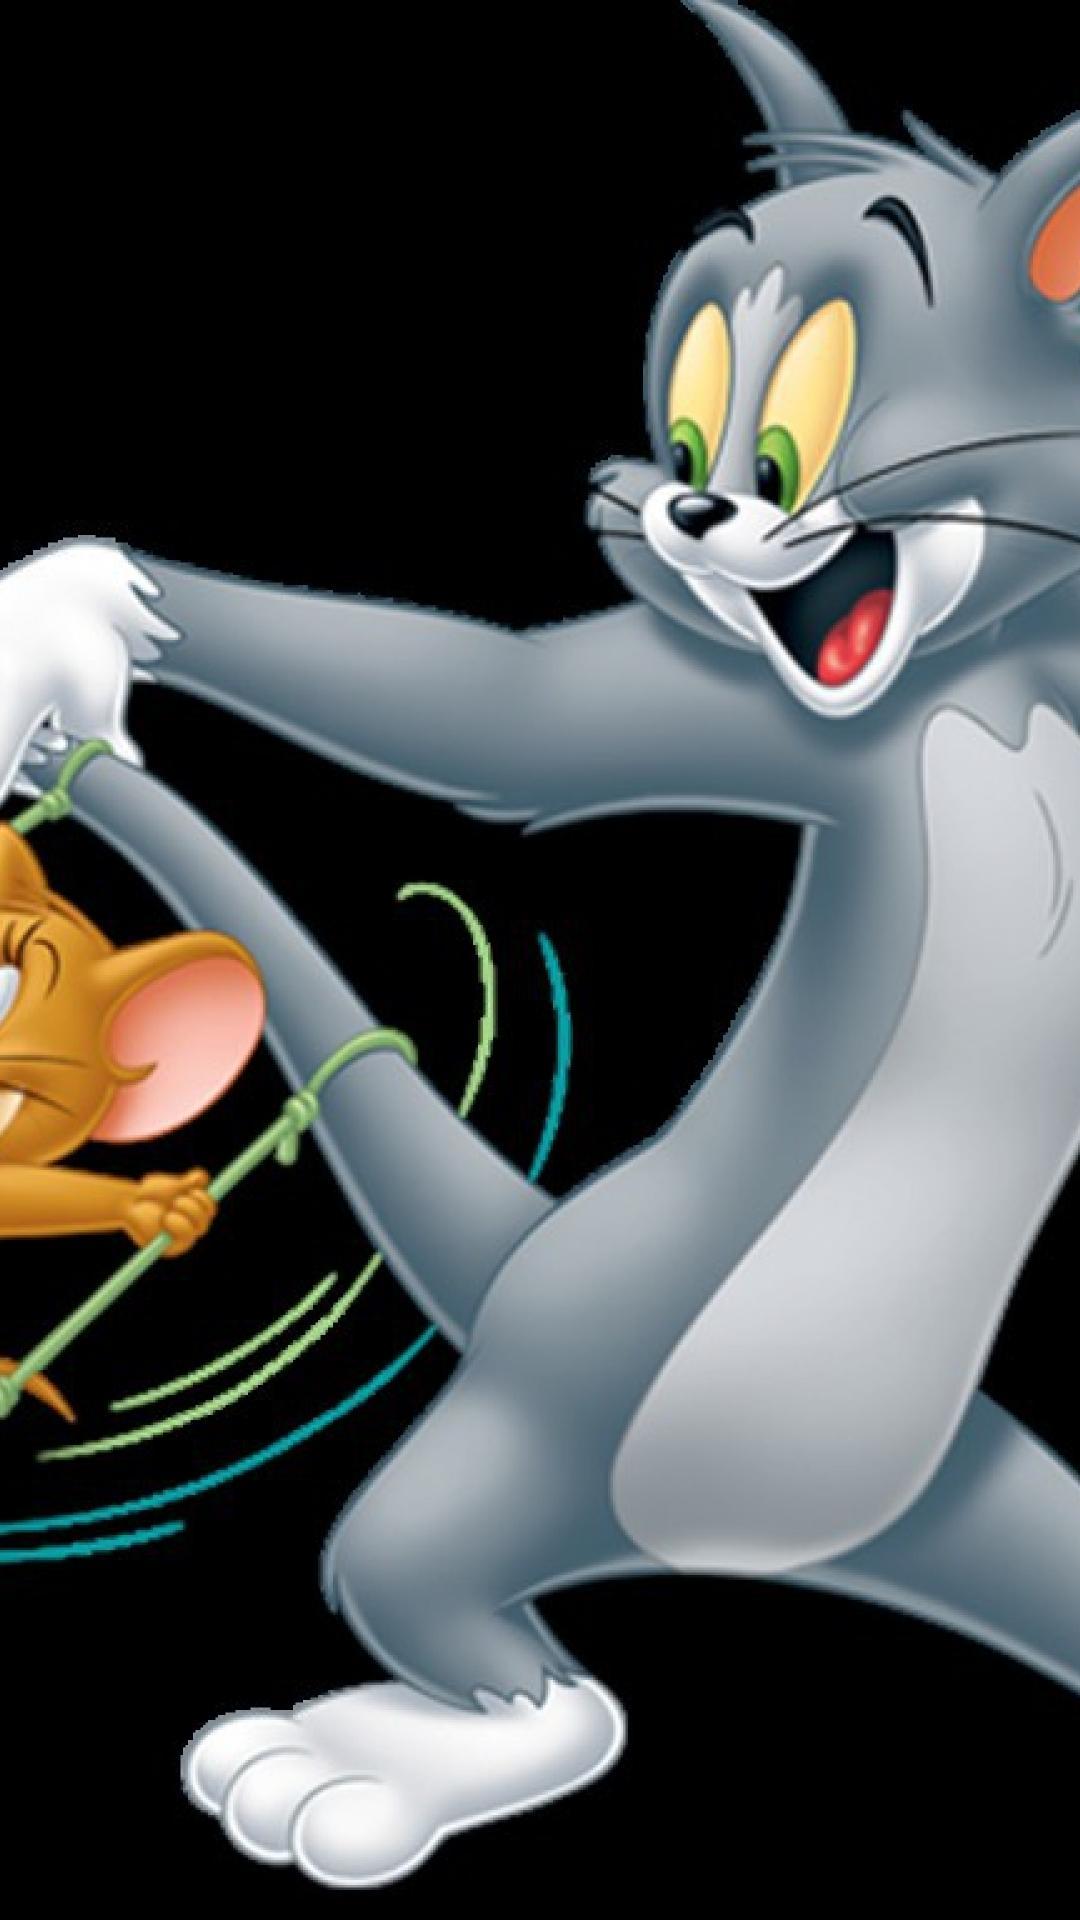 Không ai có thể chối từ một tác phẩm nghệ thuật hài hước và giải trí như hình ảnh Tom và Jerry. Với những trò đùa, những trận đánh đầy sáng tạo giữa chú chuột Jerry và mèo Tom, chắc chắn bạn sẽ không thể rời mắt khỏi từng chi tiết của họ.